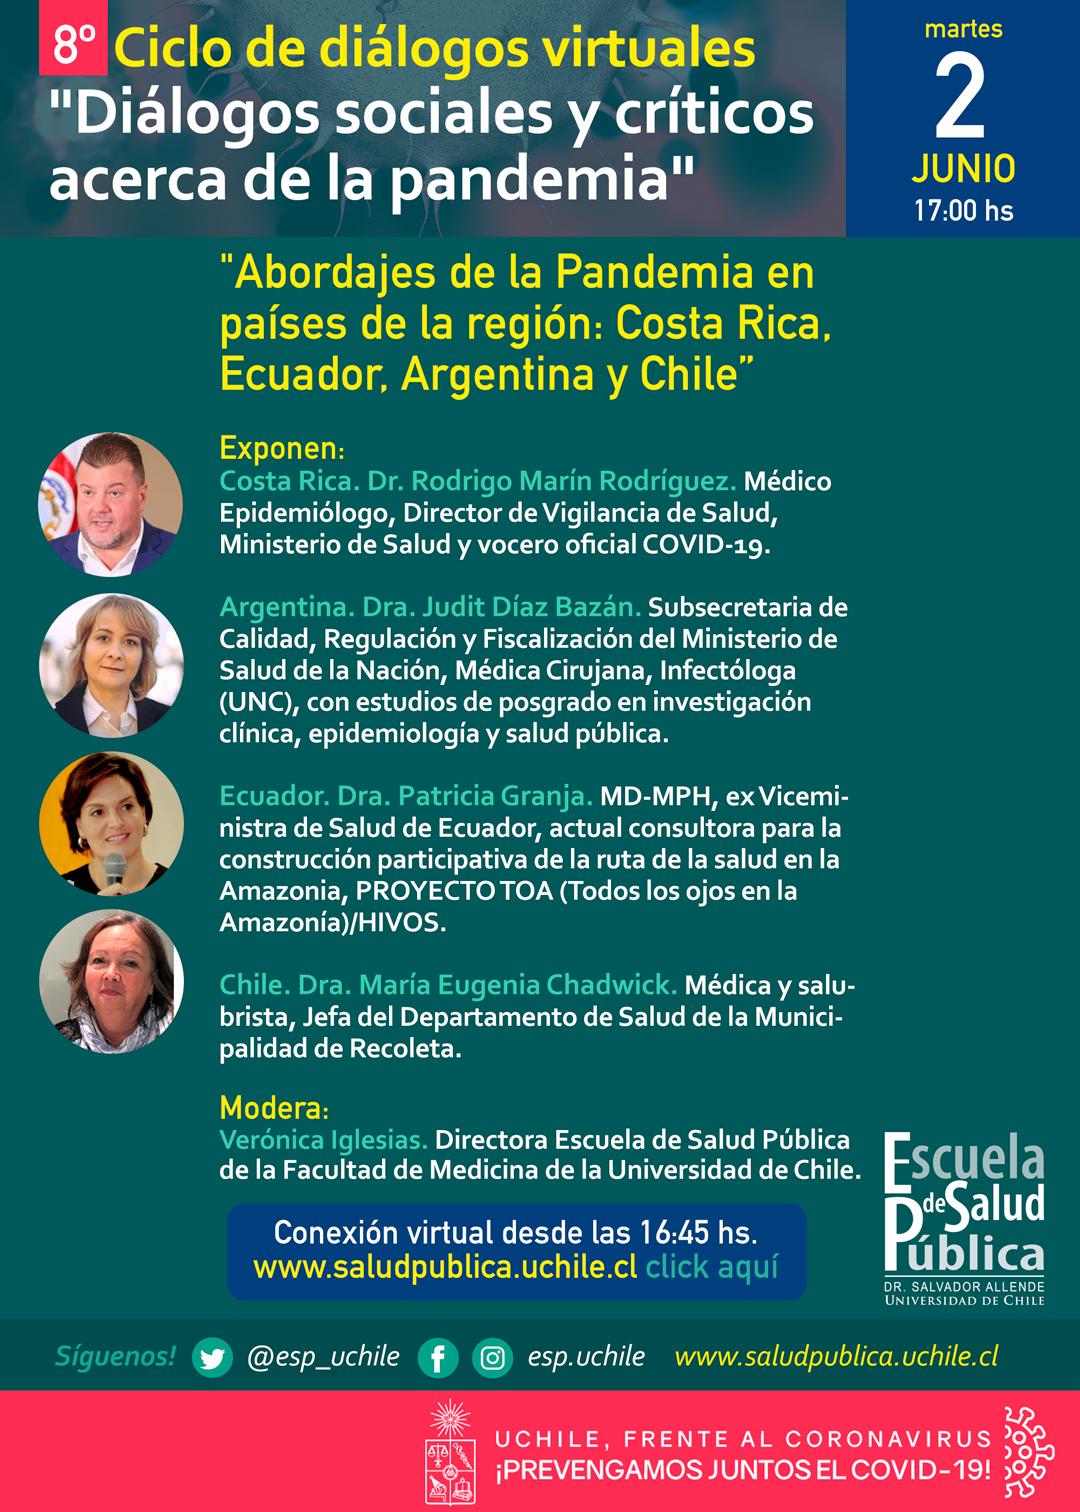 8vo Ciclo de diálogos virtuales; Abordajes de la Pandemia en países de la región: Costa Rica,  Ecuador, Argentina y Chile 